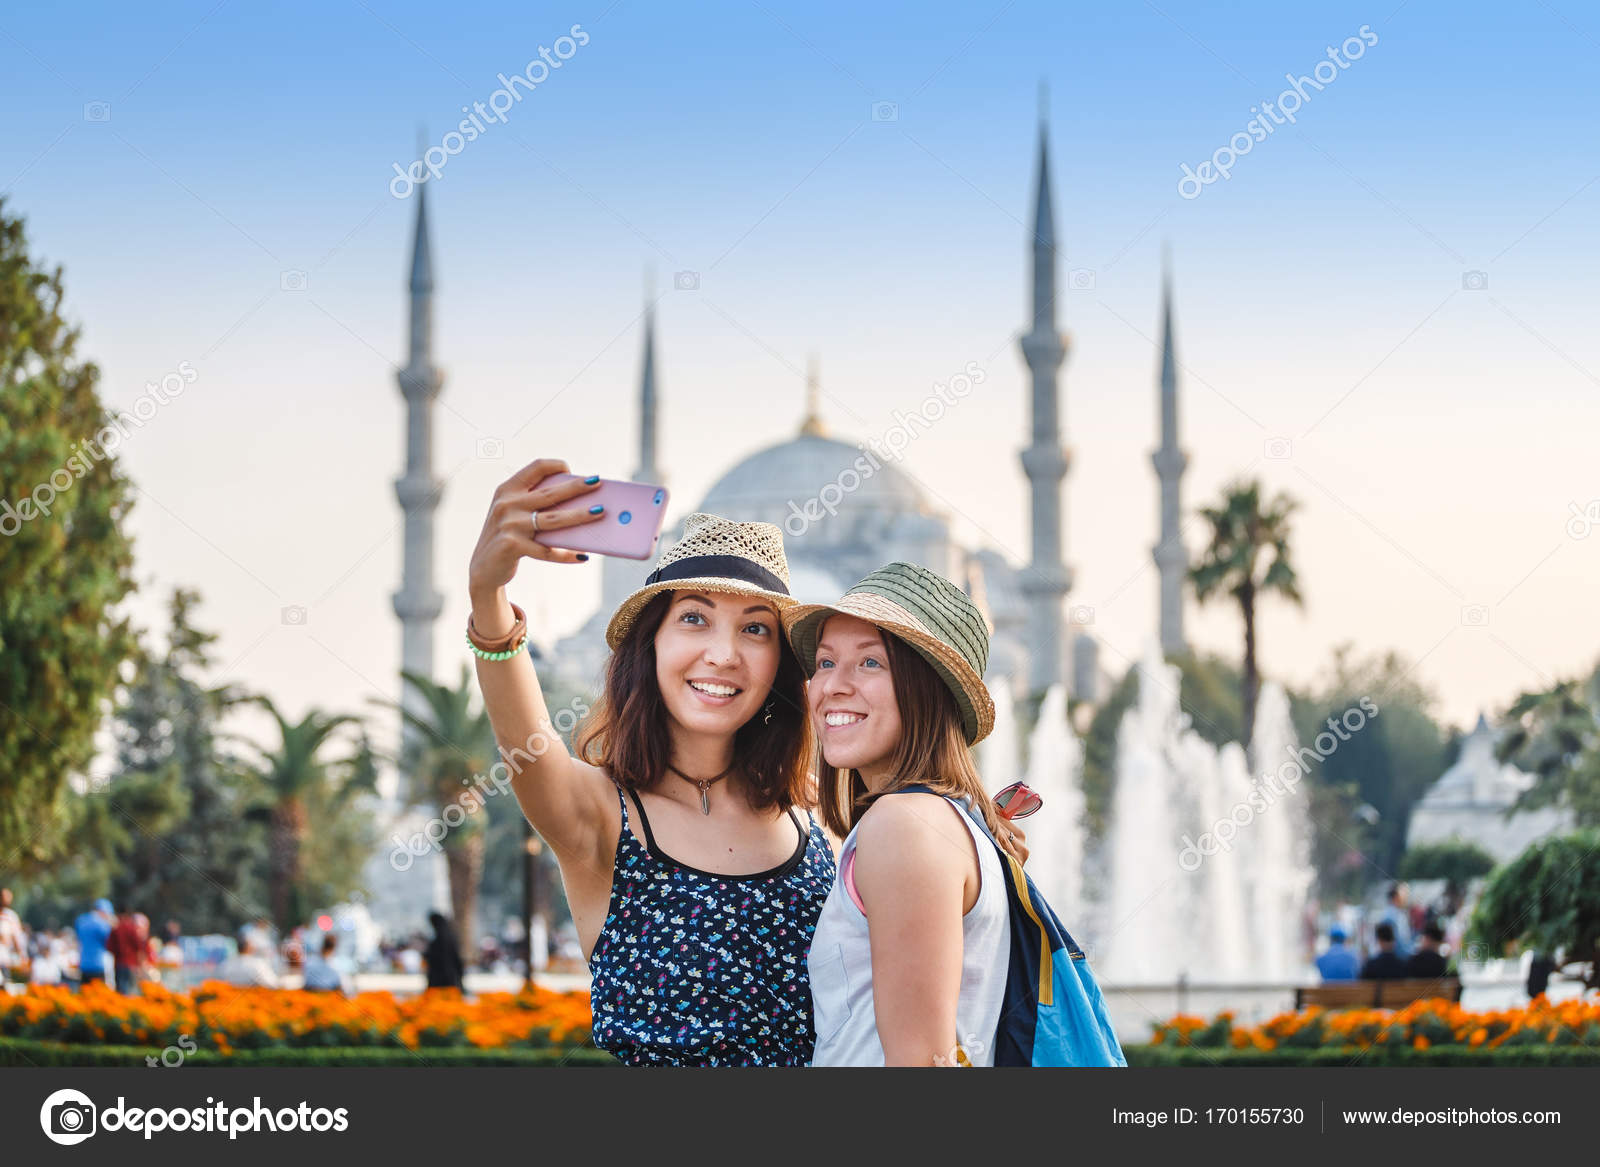 Тур путевка стамбул. Туристы в Турции. Стамбул туристы. Турция туризм. Счастливые туристы в Стамбуле.